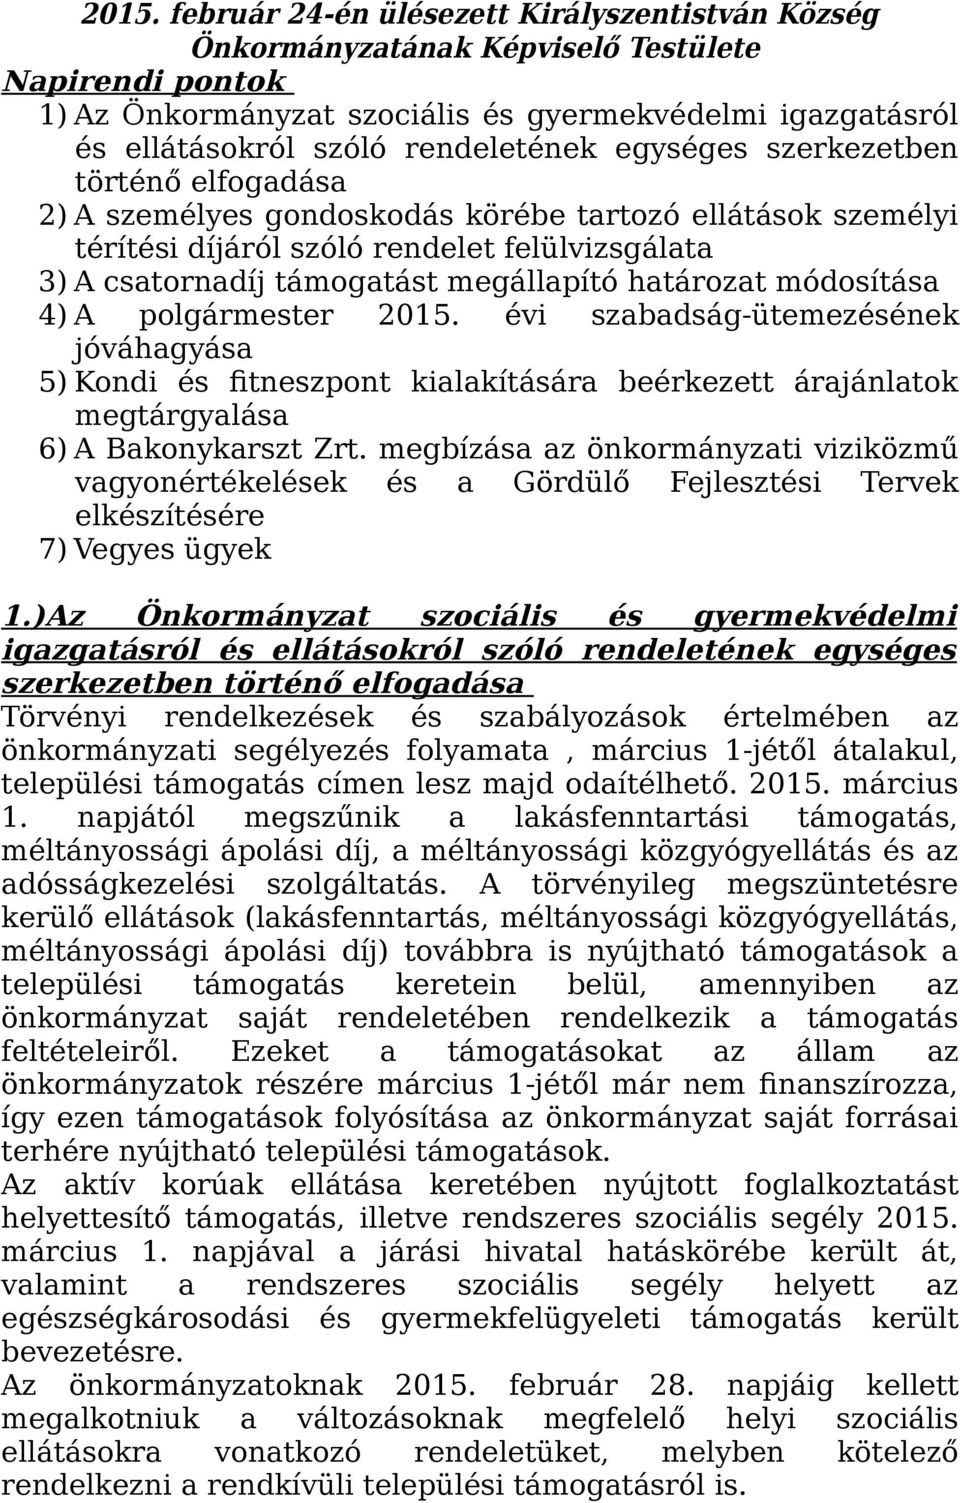 megállapító határozat módosítása 4) A polgármester 2015. évi szabadság-ütemezésének jóváhagyása 5) Kondi és fitneszpont kialakítására beérkezett árajánlatok megtárgyalása 6) A Bakonykarszt Zrt.